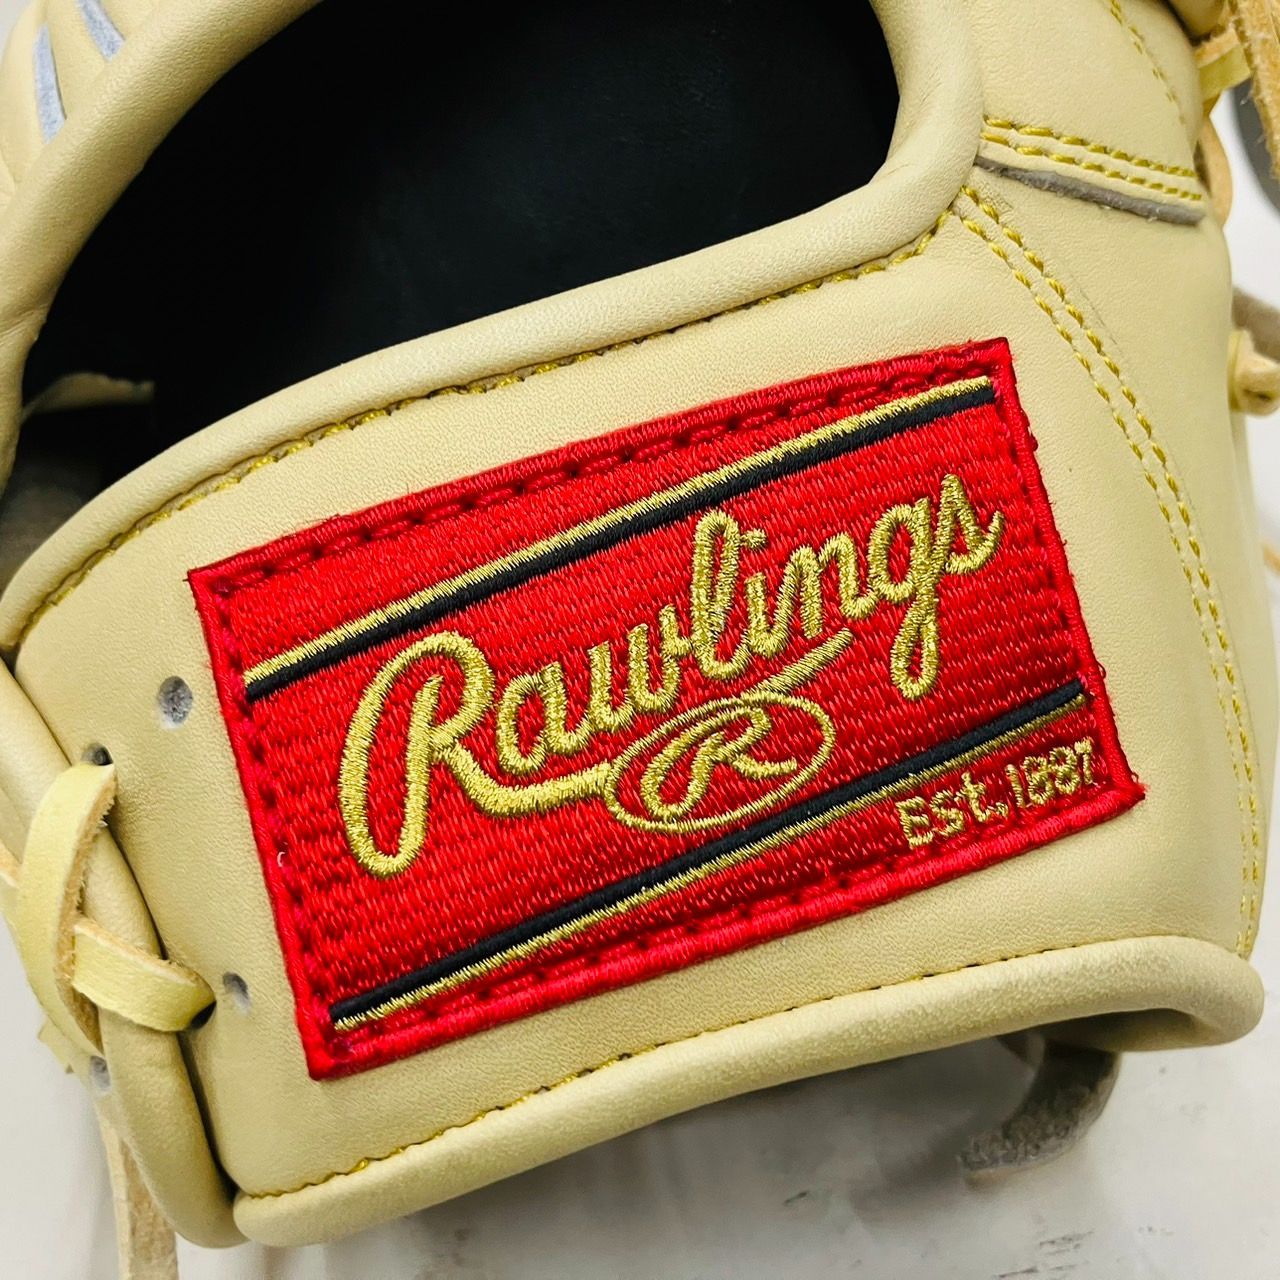 ローリングス　Rawlings　HOH　オリジナルカスタムモデル　硬式用　ユーティリティ用　高校野球対応　当店限定モデル　投手・野手で兼用可能